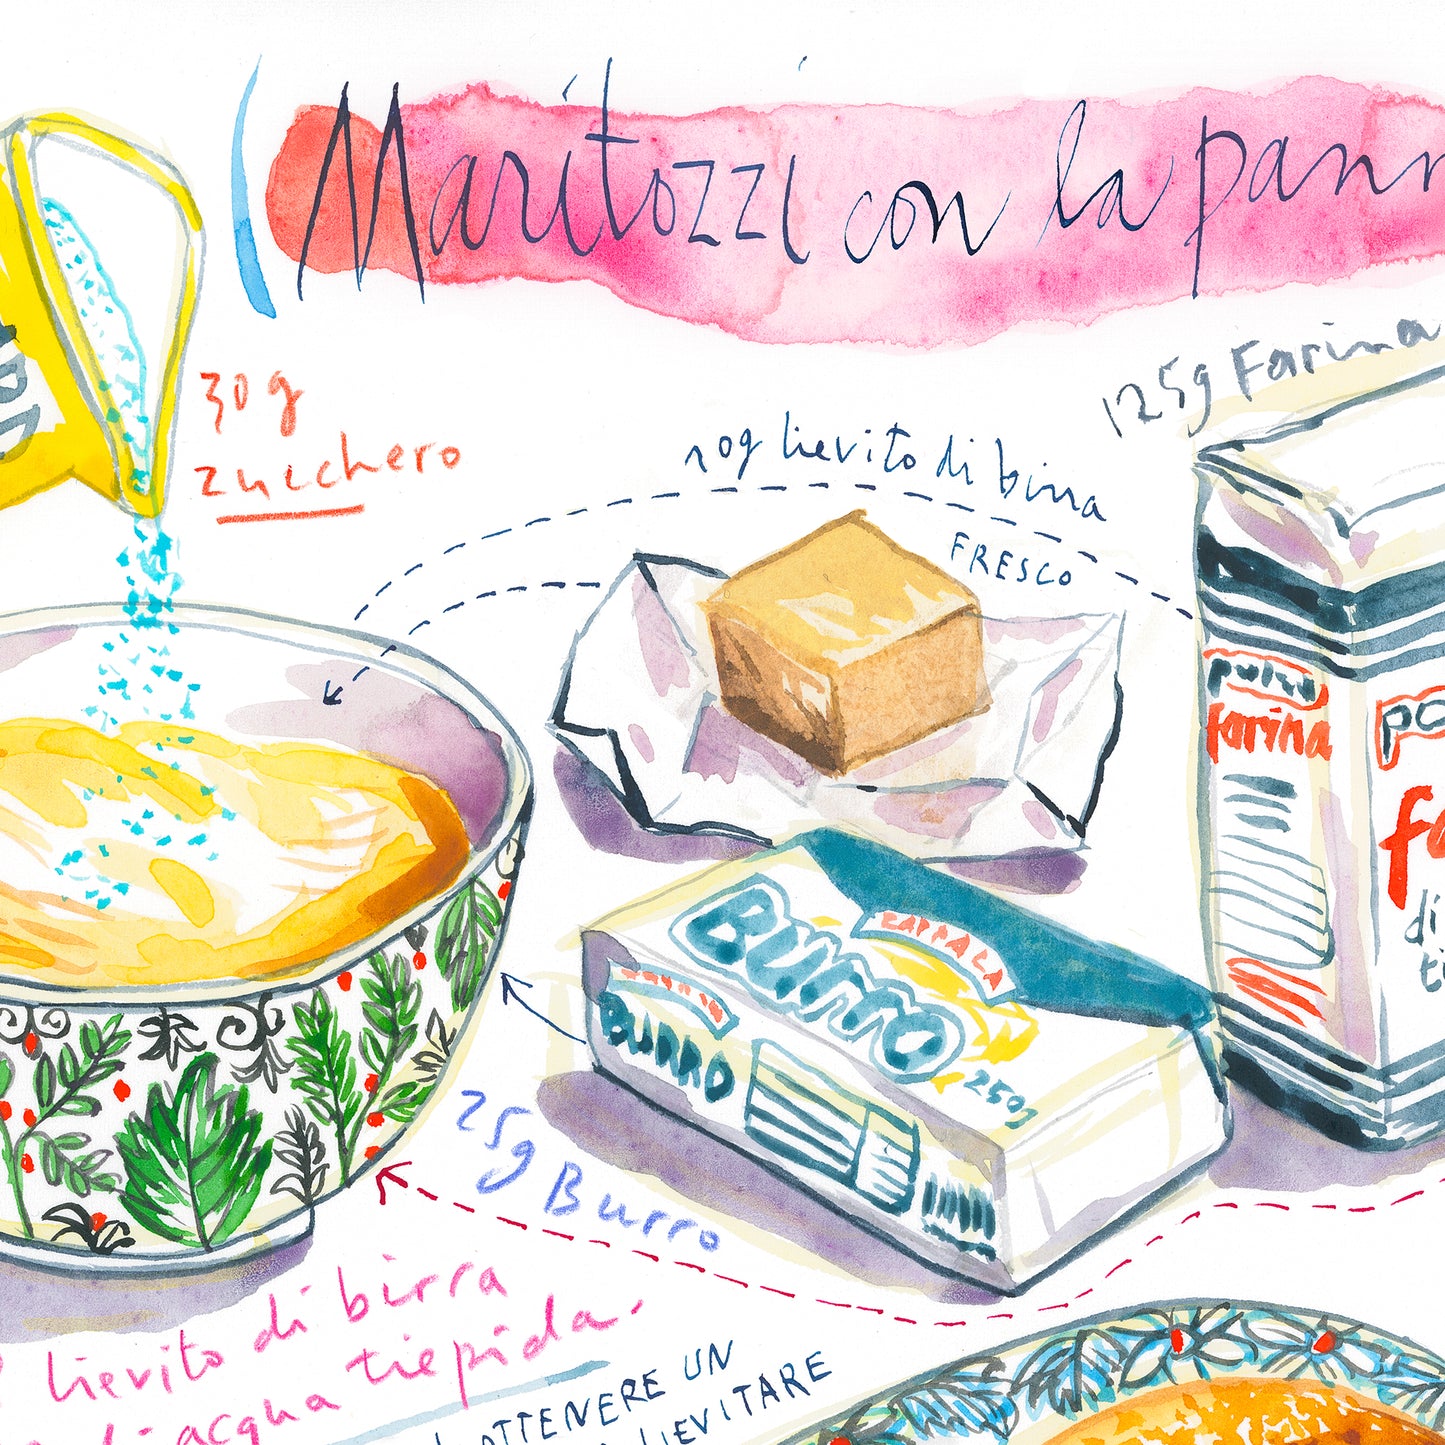 Italian Maritozzi con la Panna recipe